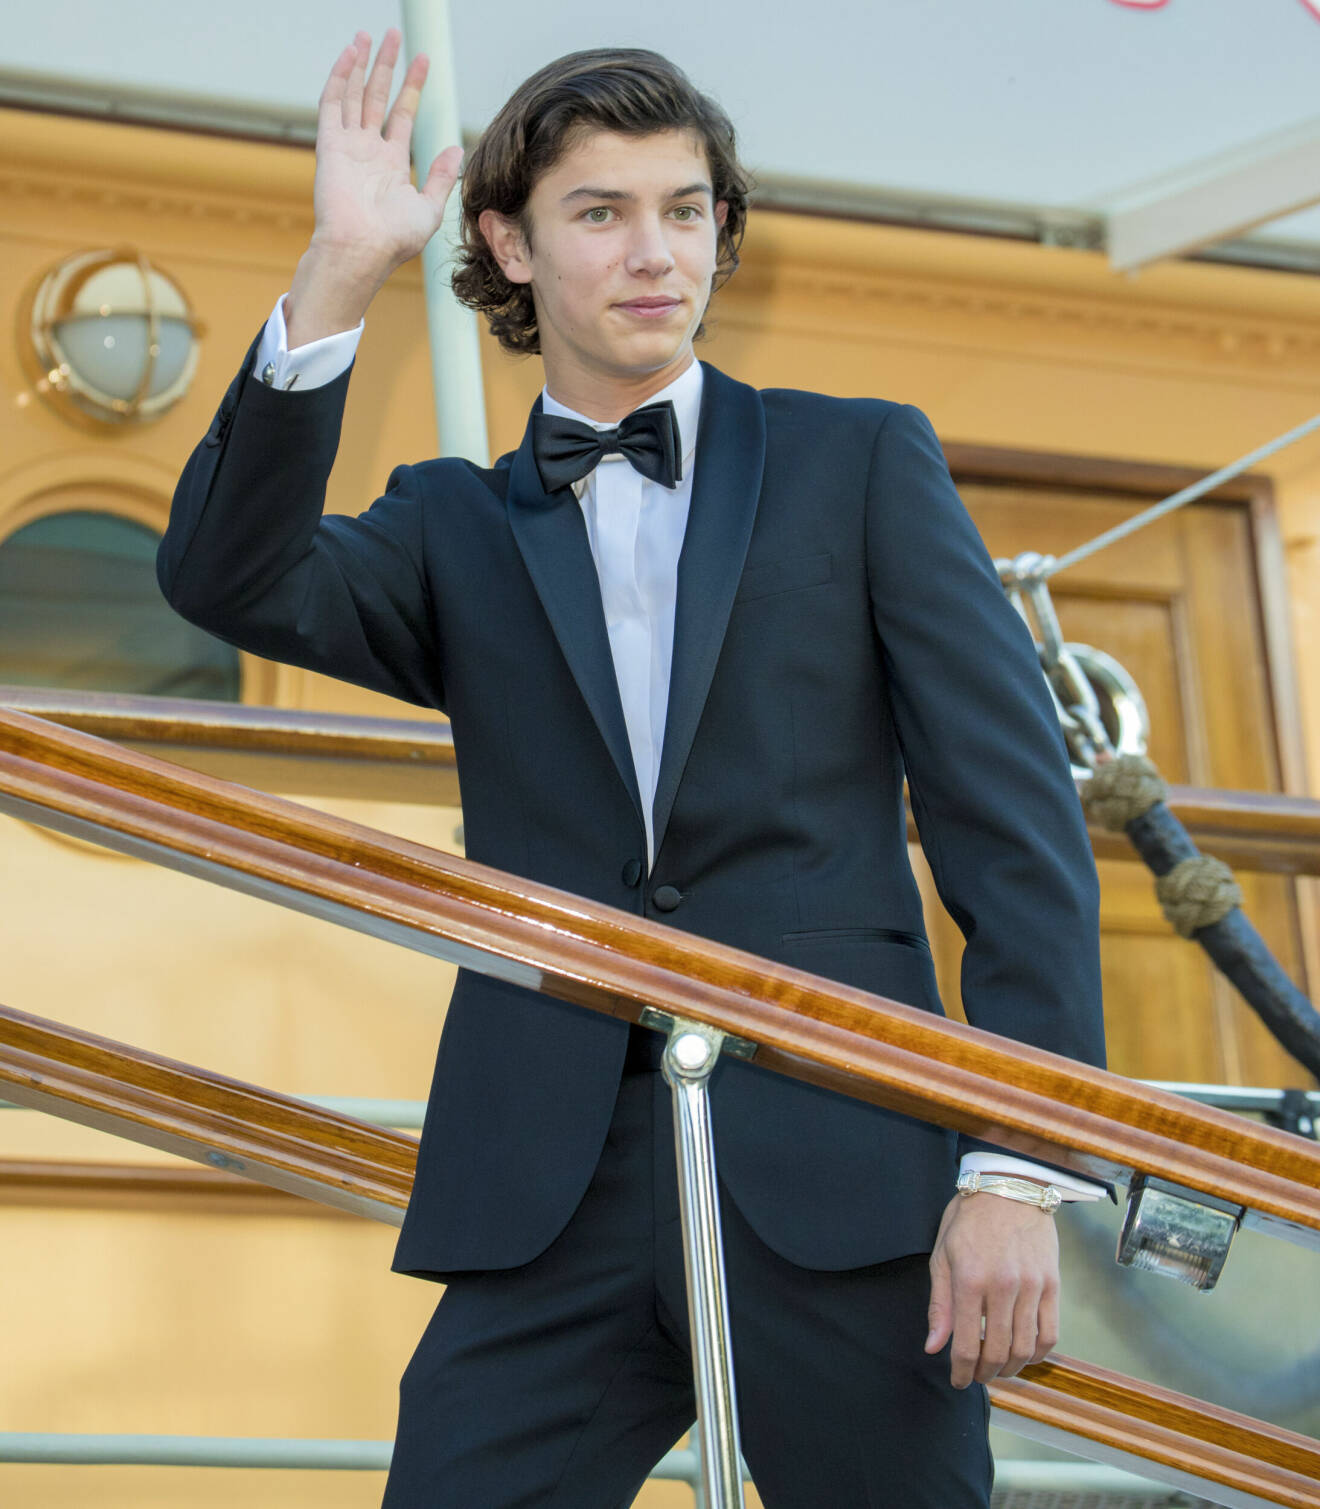 Prins Nikolai vid firandet av 18-årsdagen.